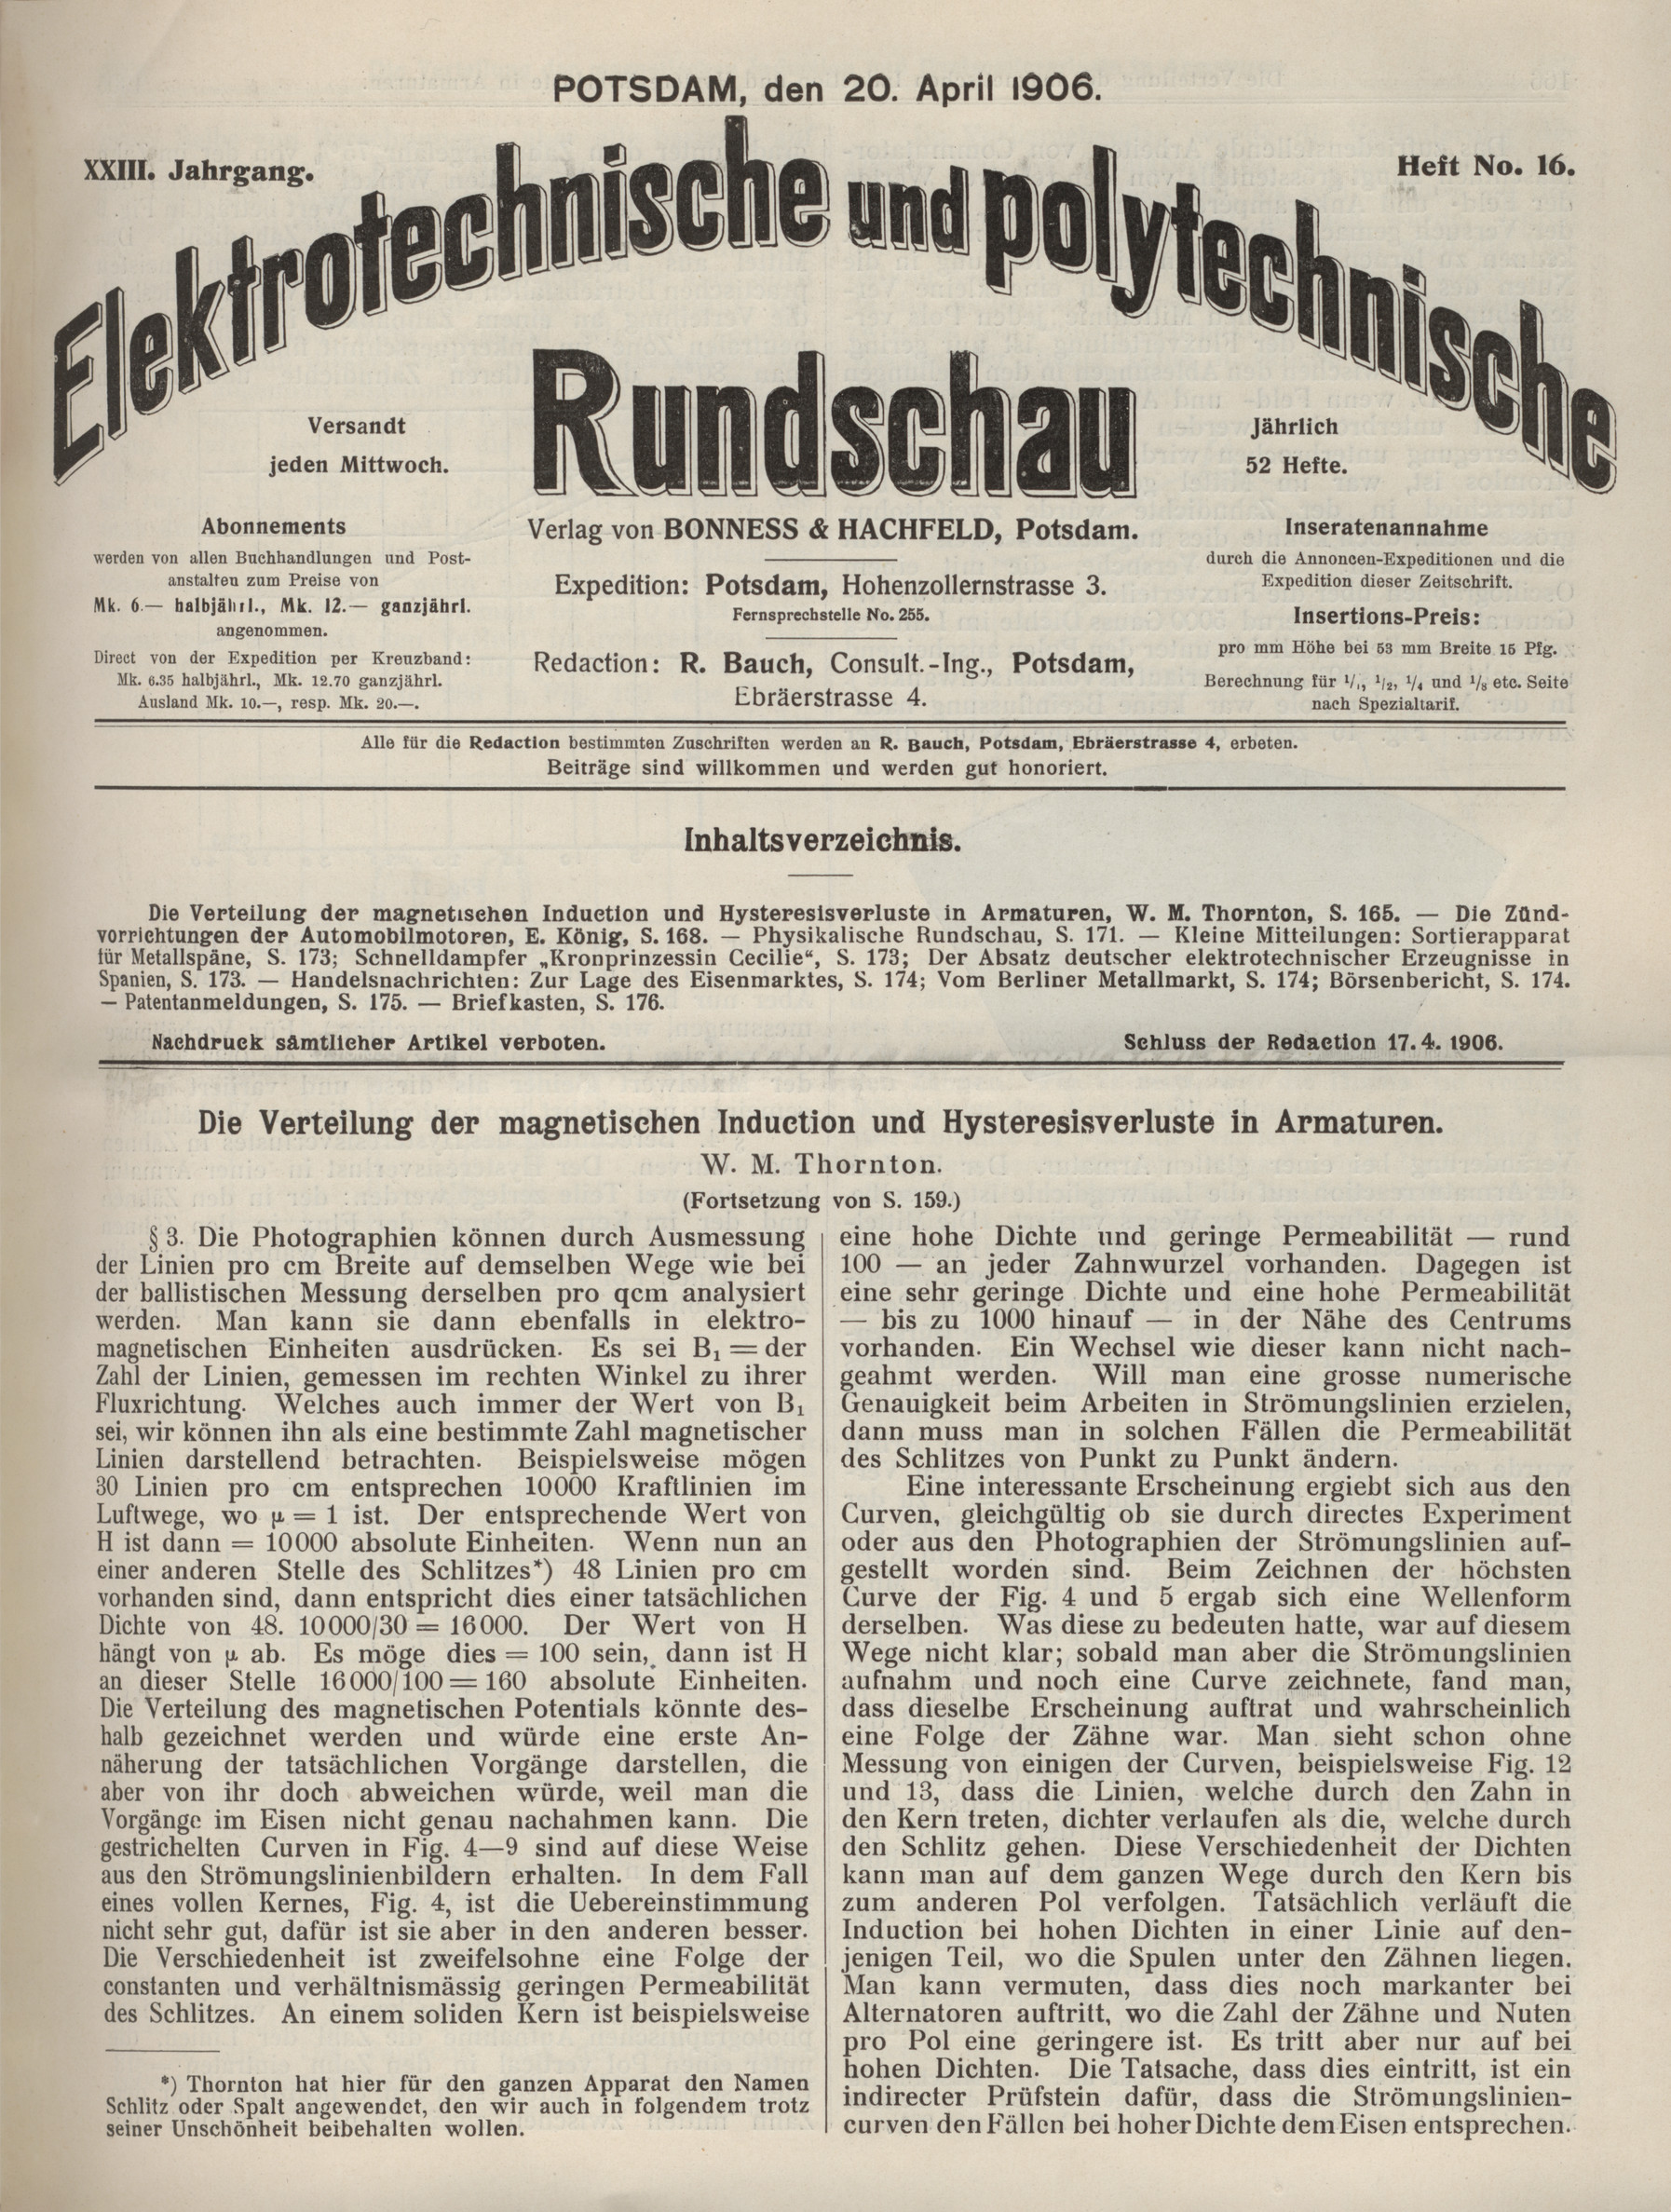 Elektrotechnische und polytechnische Rundschau, XXIII. Jahrgang, 20. April 1906, Heft No. 16